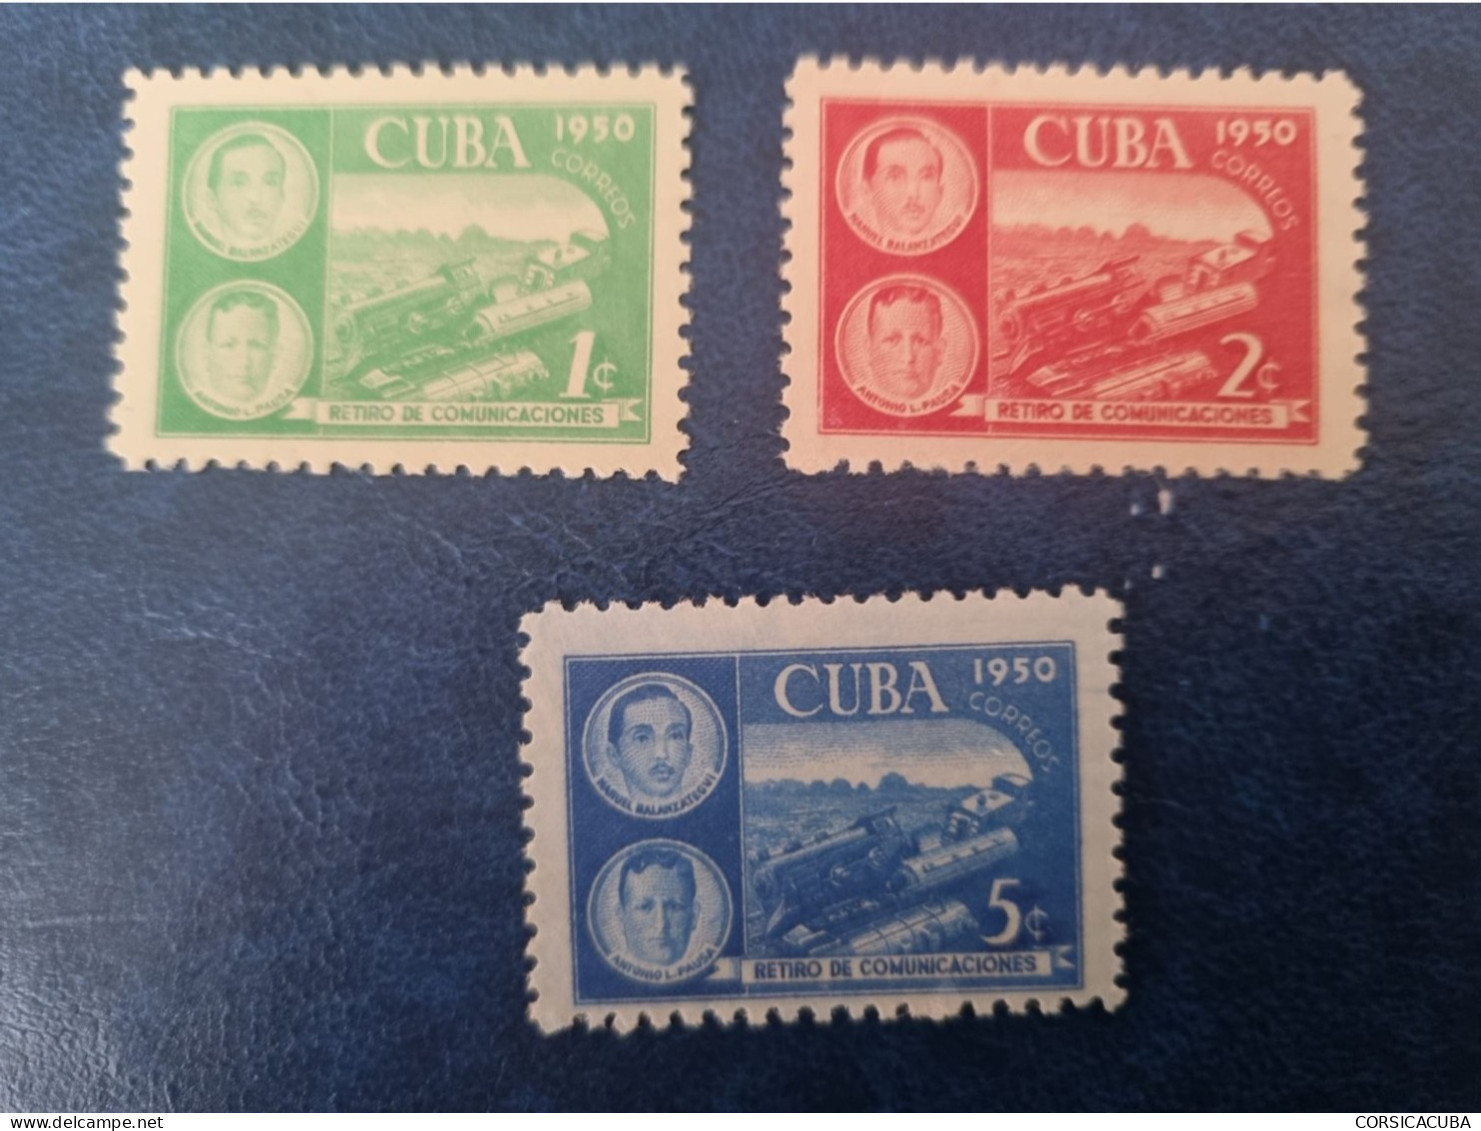 CUBA  NEUF  1950    RETIRO  DE  COMUNICACIONES  //  PARFAIT  ETAT  //  1er  CHOIX  // - Unused Stamps